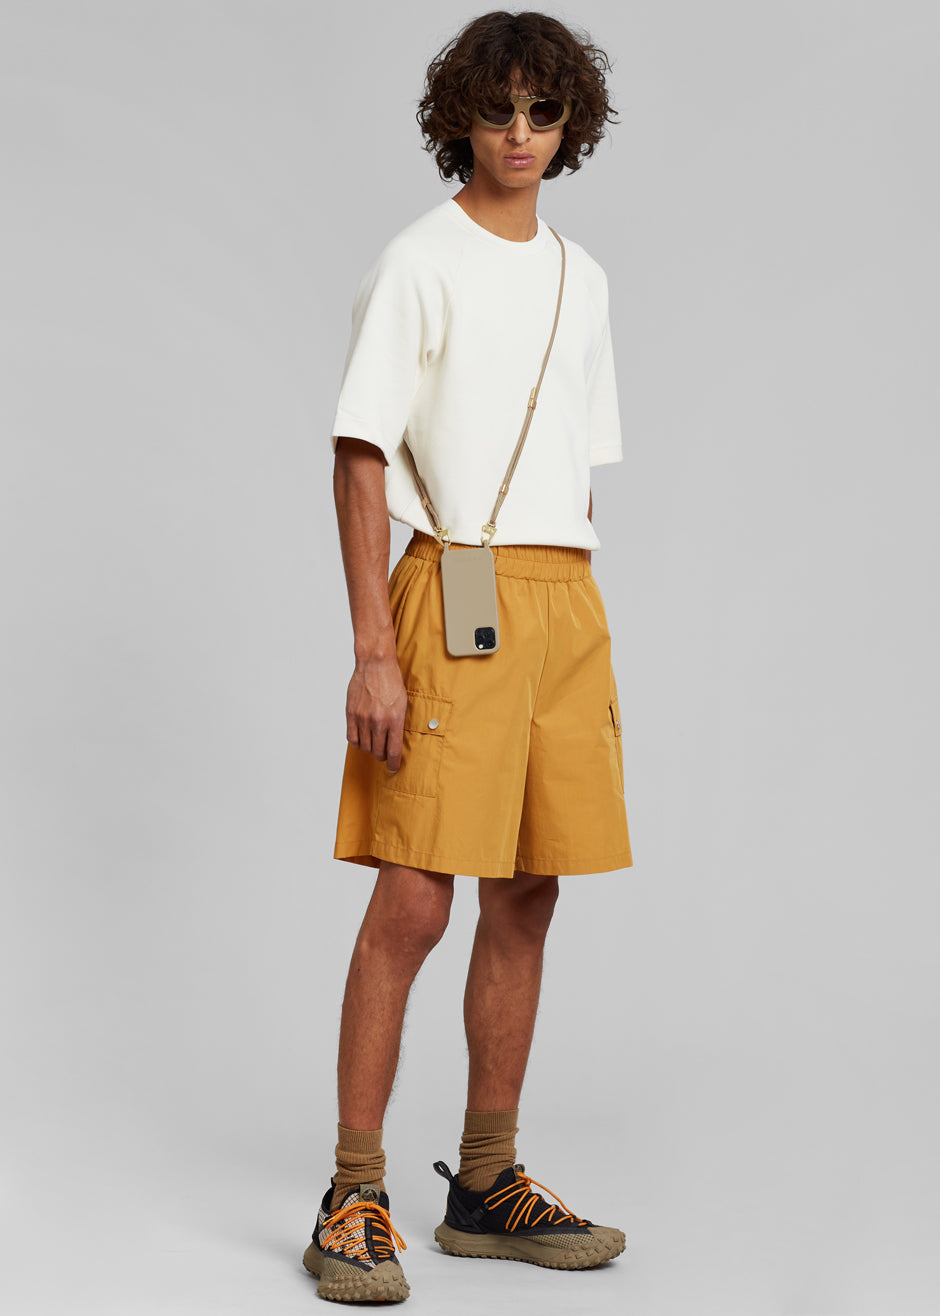 Spence Nylon Shorts - Orange - 4